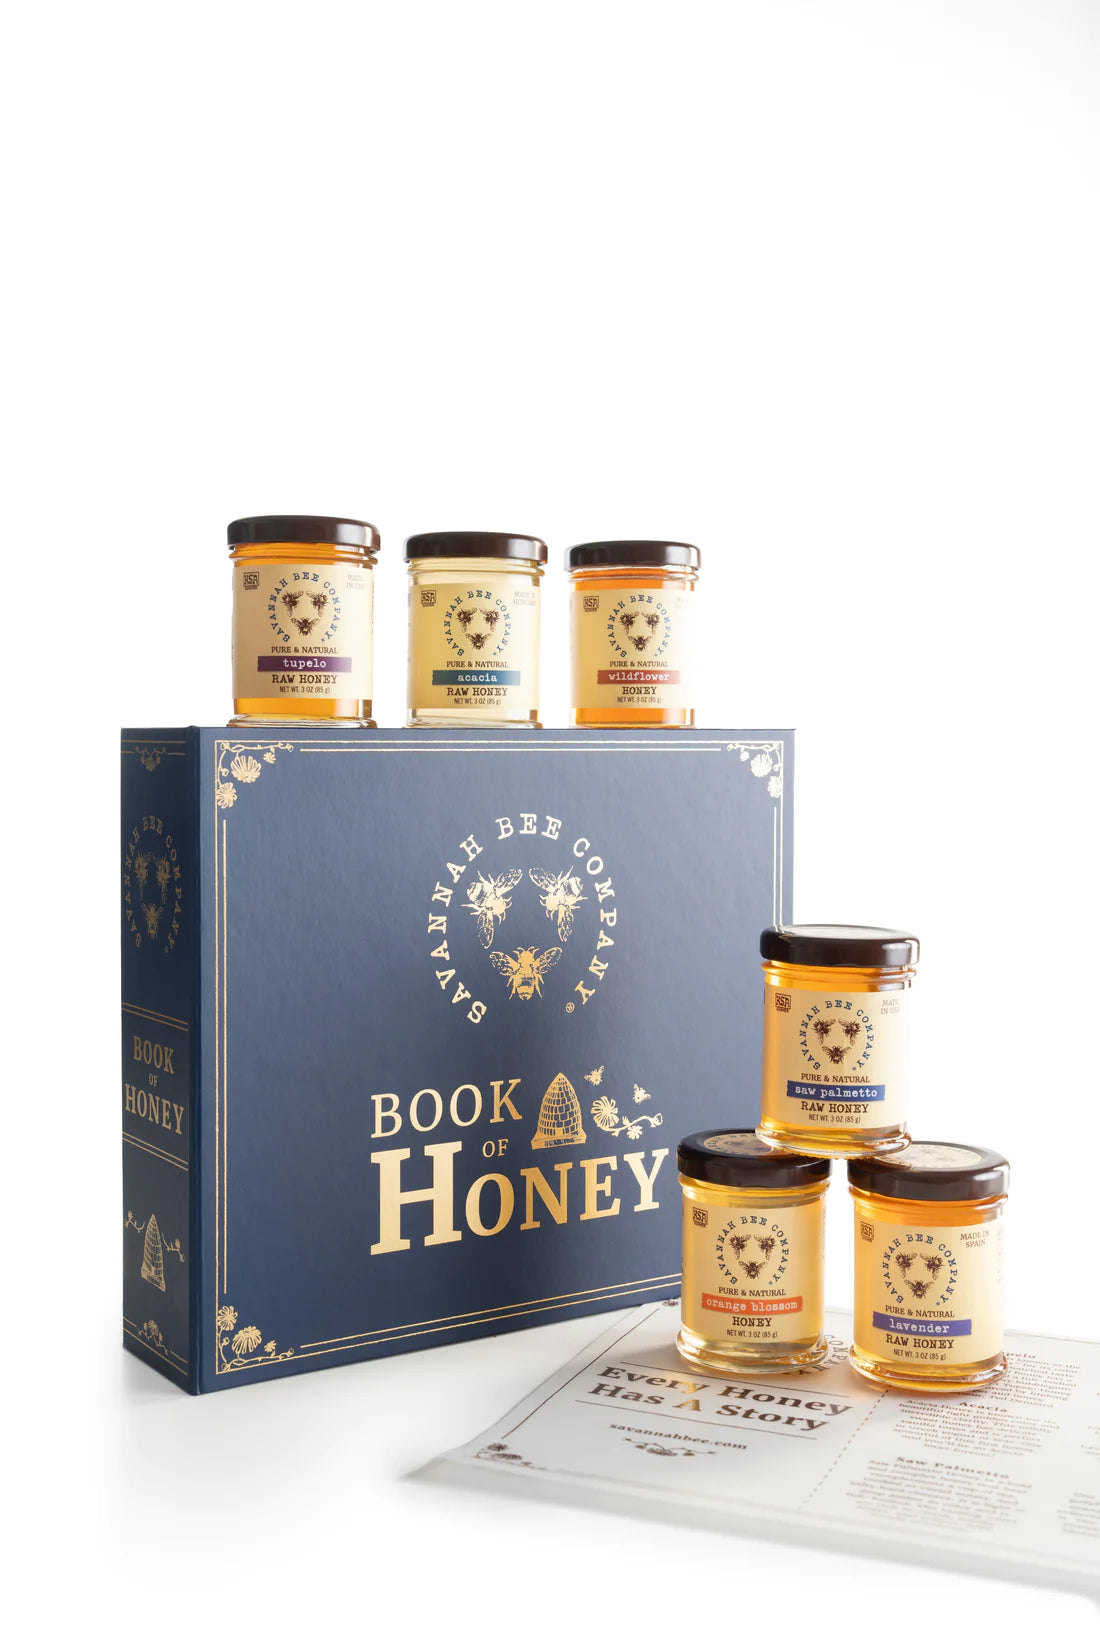 Savannah Bee Company Honey